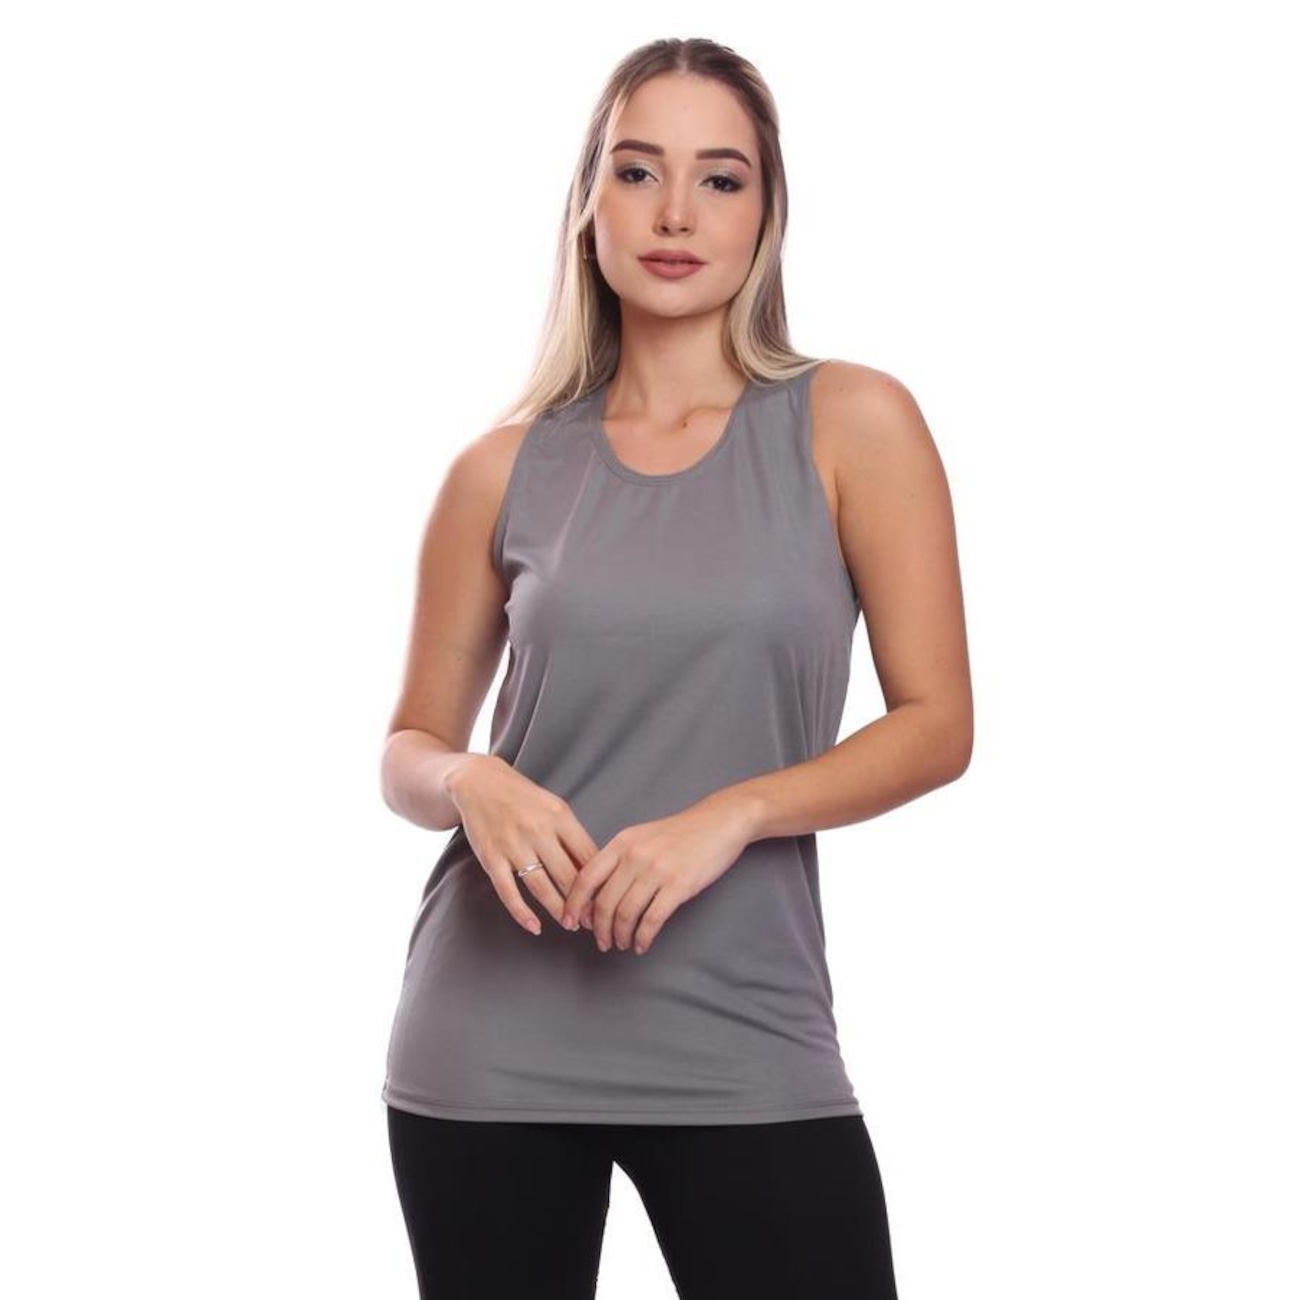 Camiseta Regata de Treino Whats Wear Dry Fit Lisa Básica Proteção Solar UV - Feminina